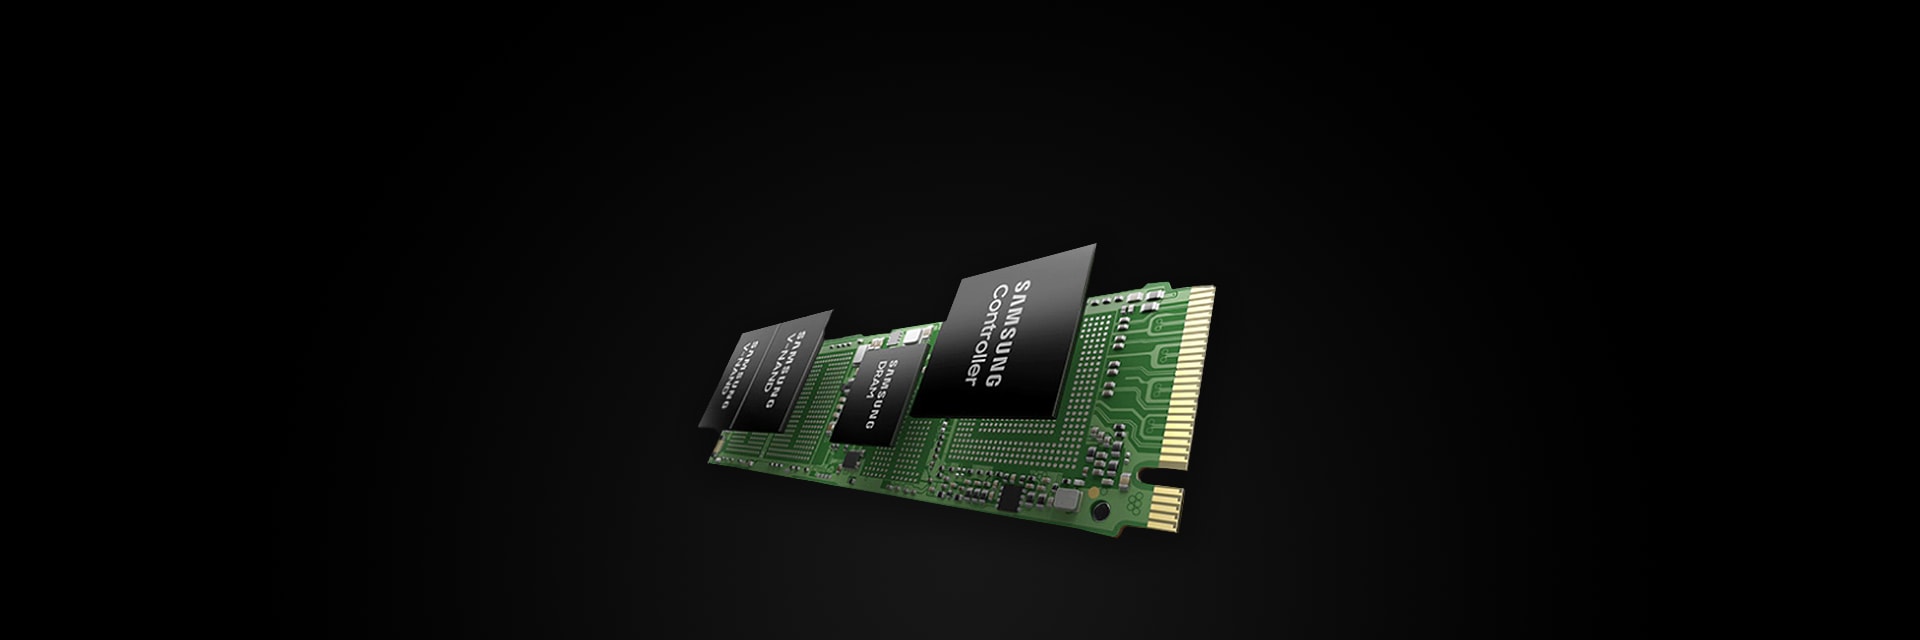 サムスン半導体のClient SSD、PC向けに新たに登場した理想的なSSDの性能